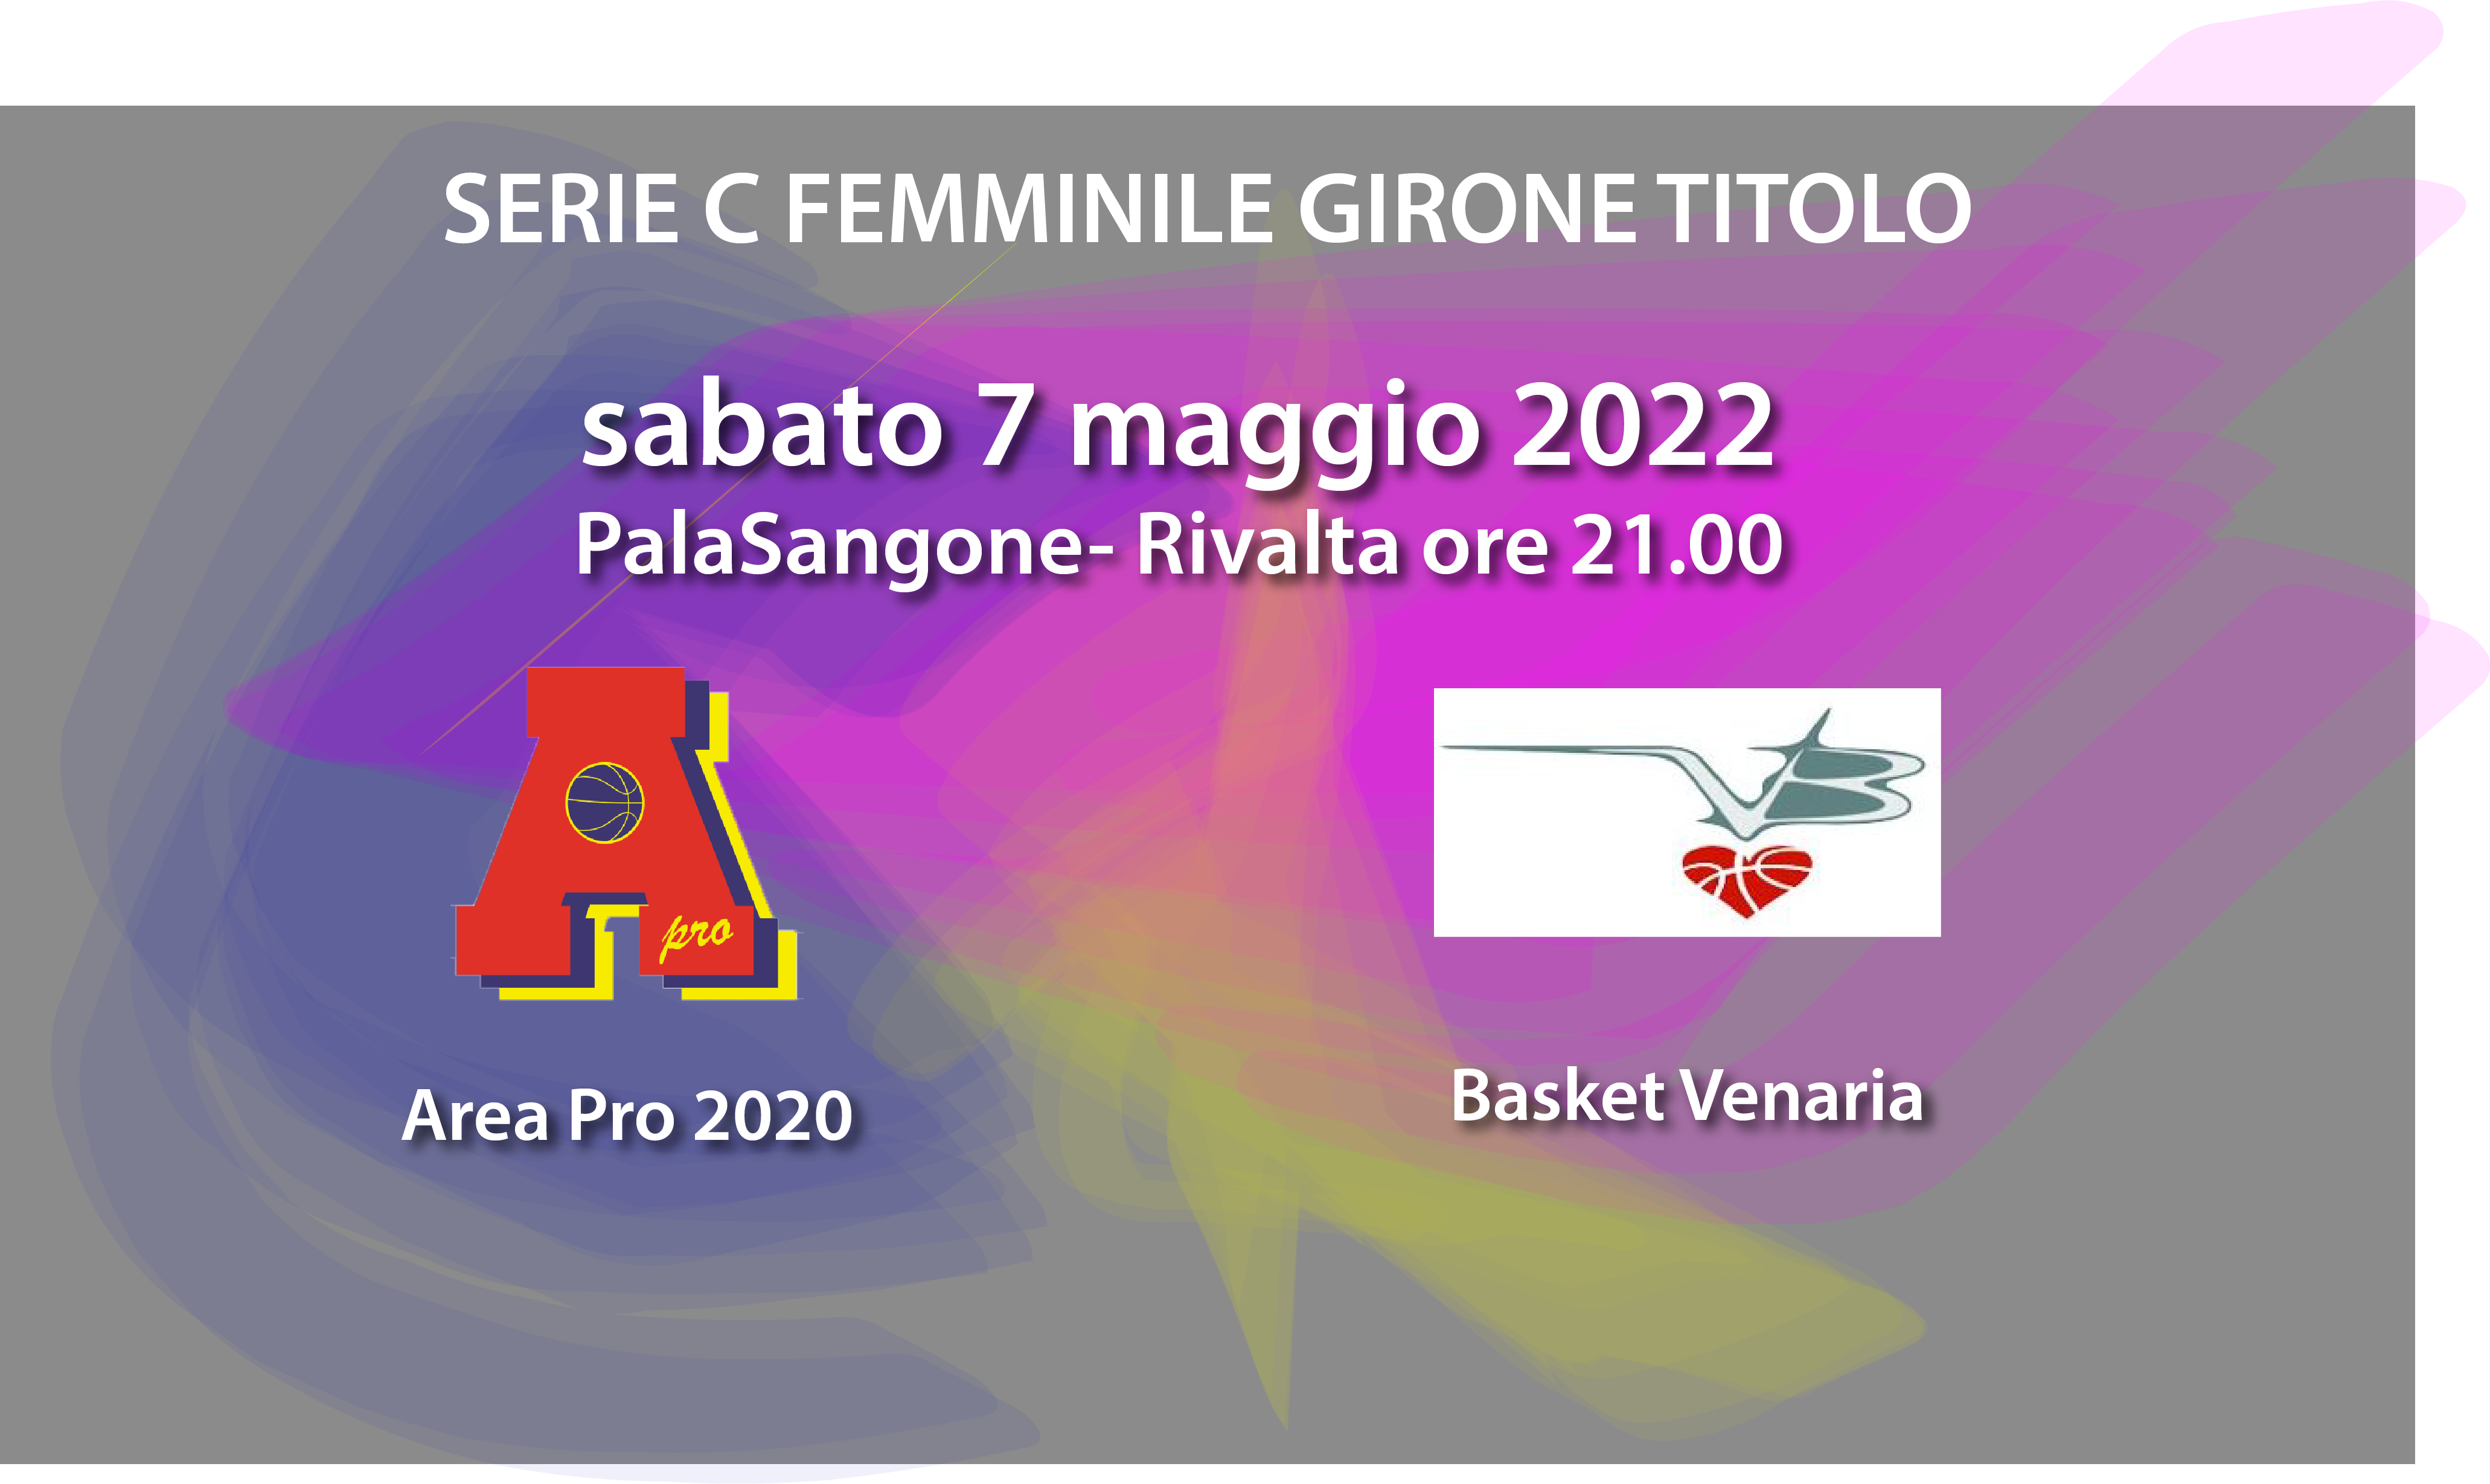 Serie C femminile: Sabato 7 maggio incontro clou Vacchieri AP2020 vs Venaria..Tutti al Palsangone per incoraggiare le nostre ragazze!!